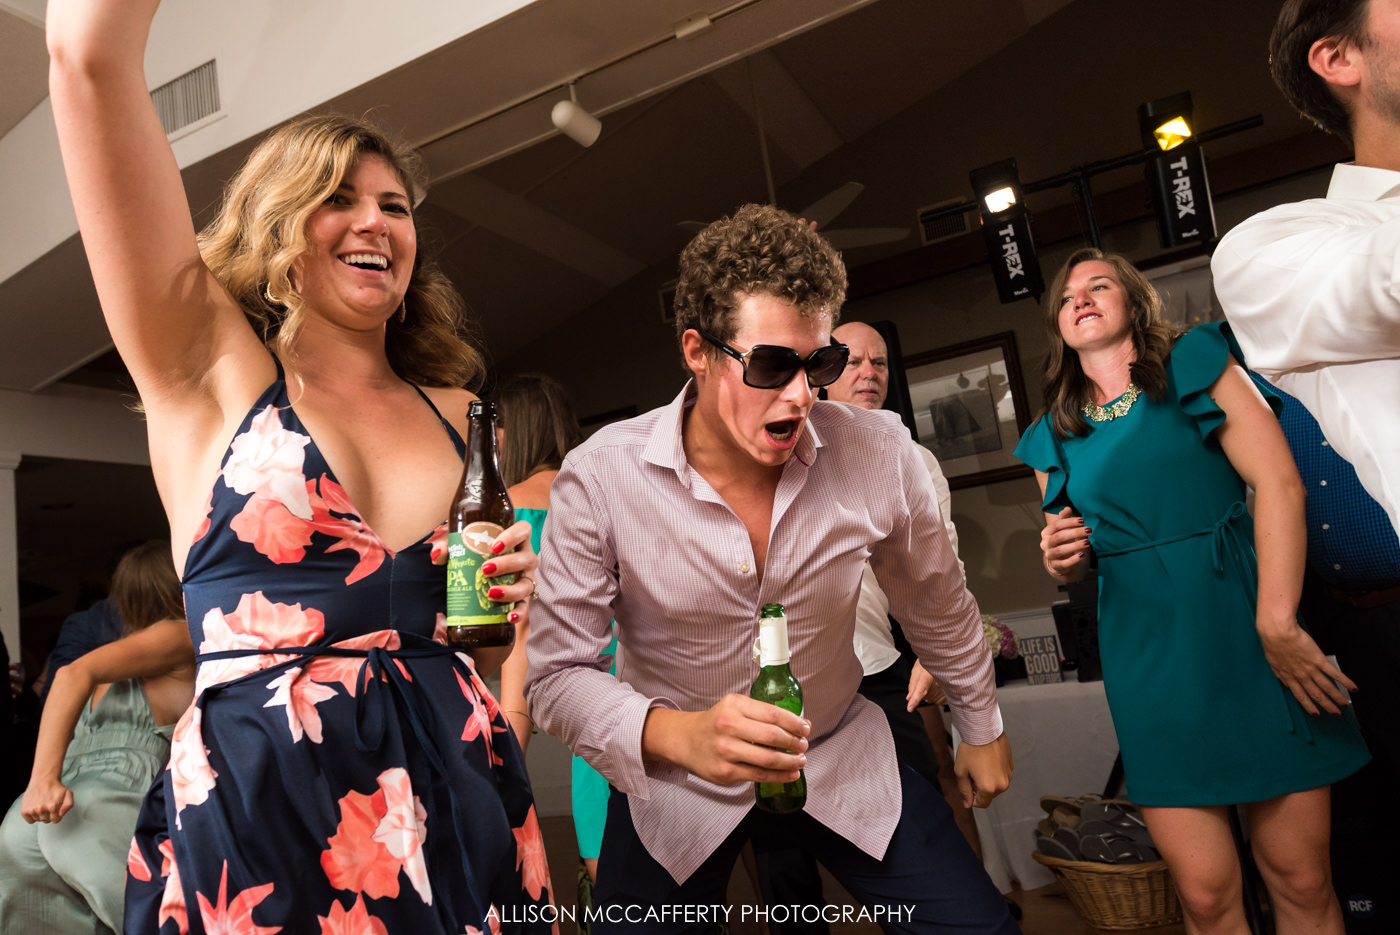 Fun dancing photos at Brant Beach Yacht Club